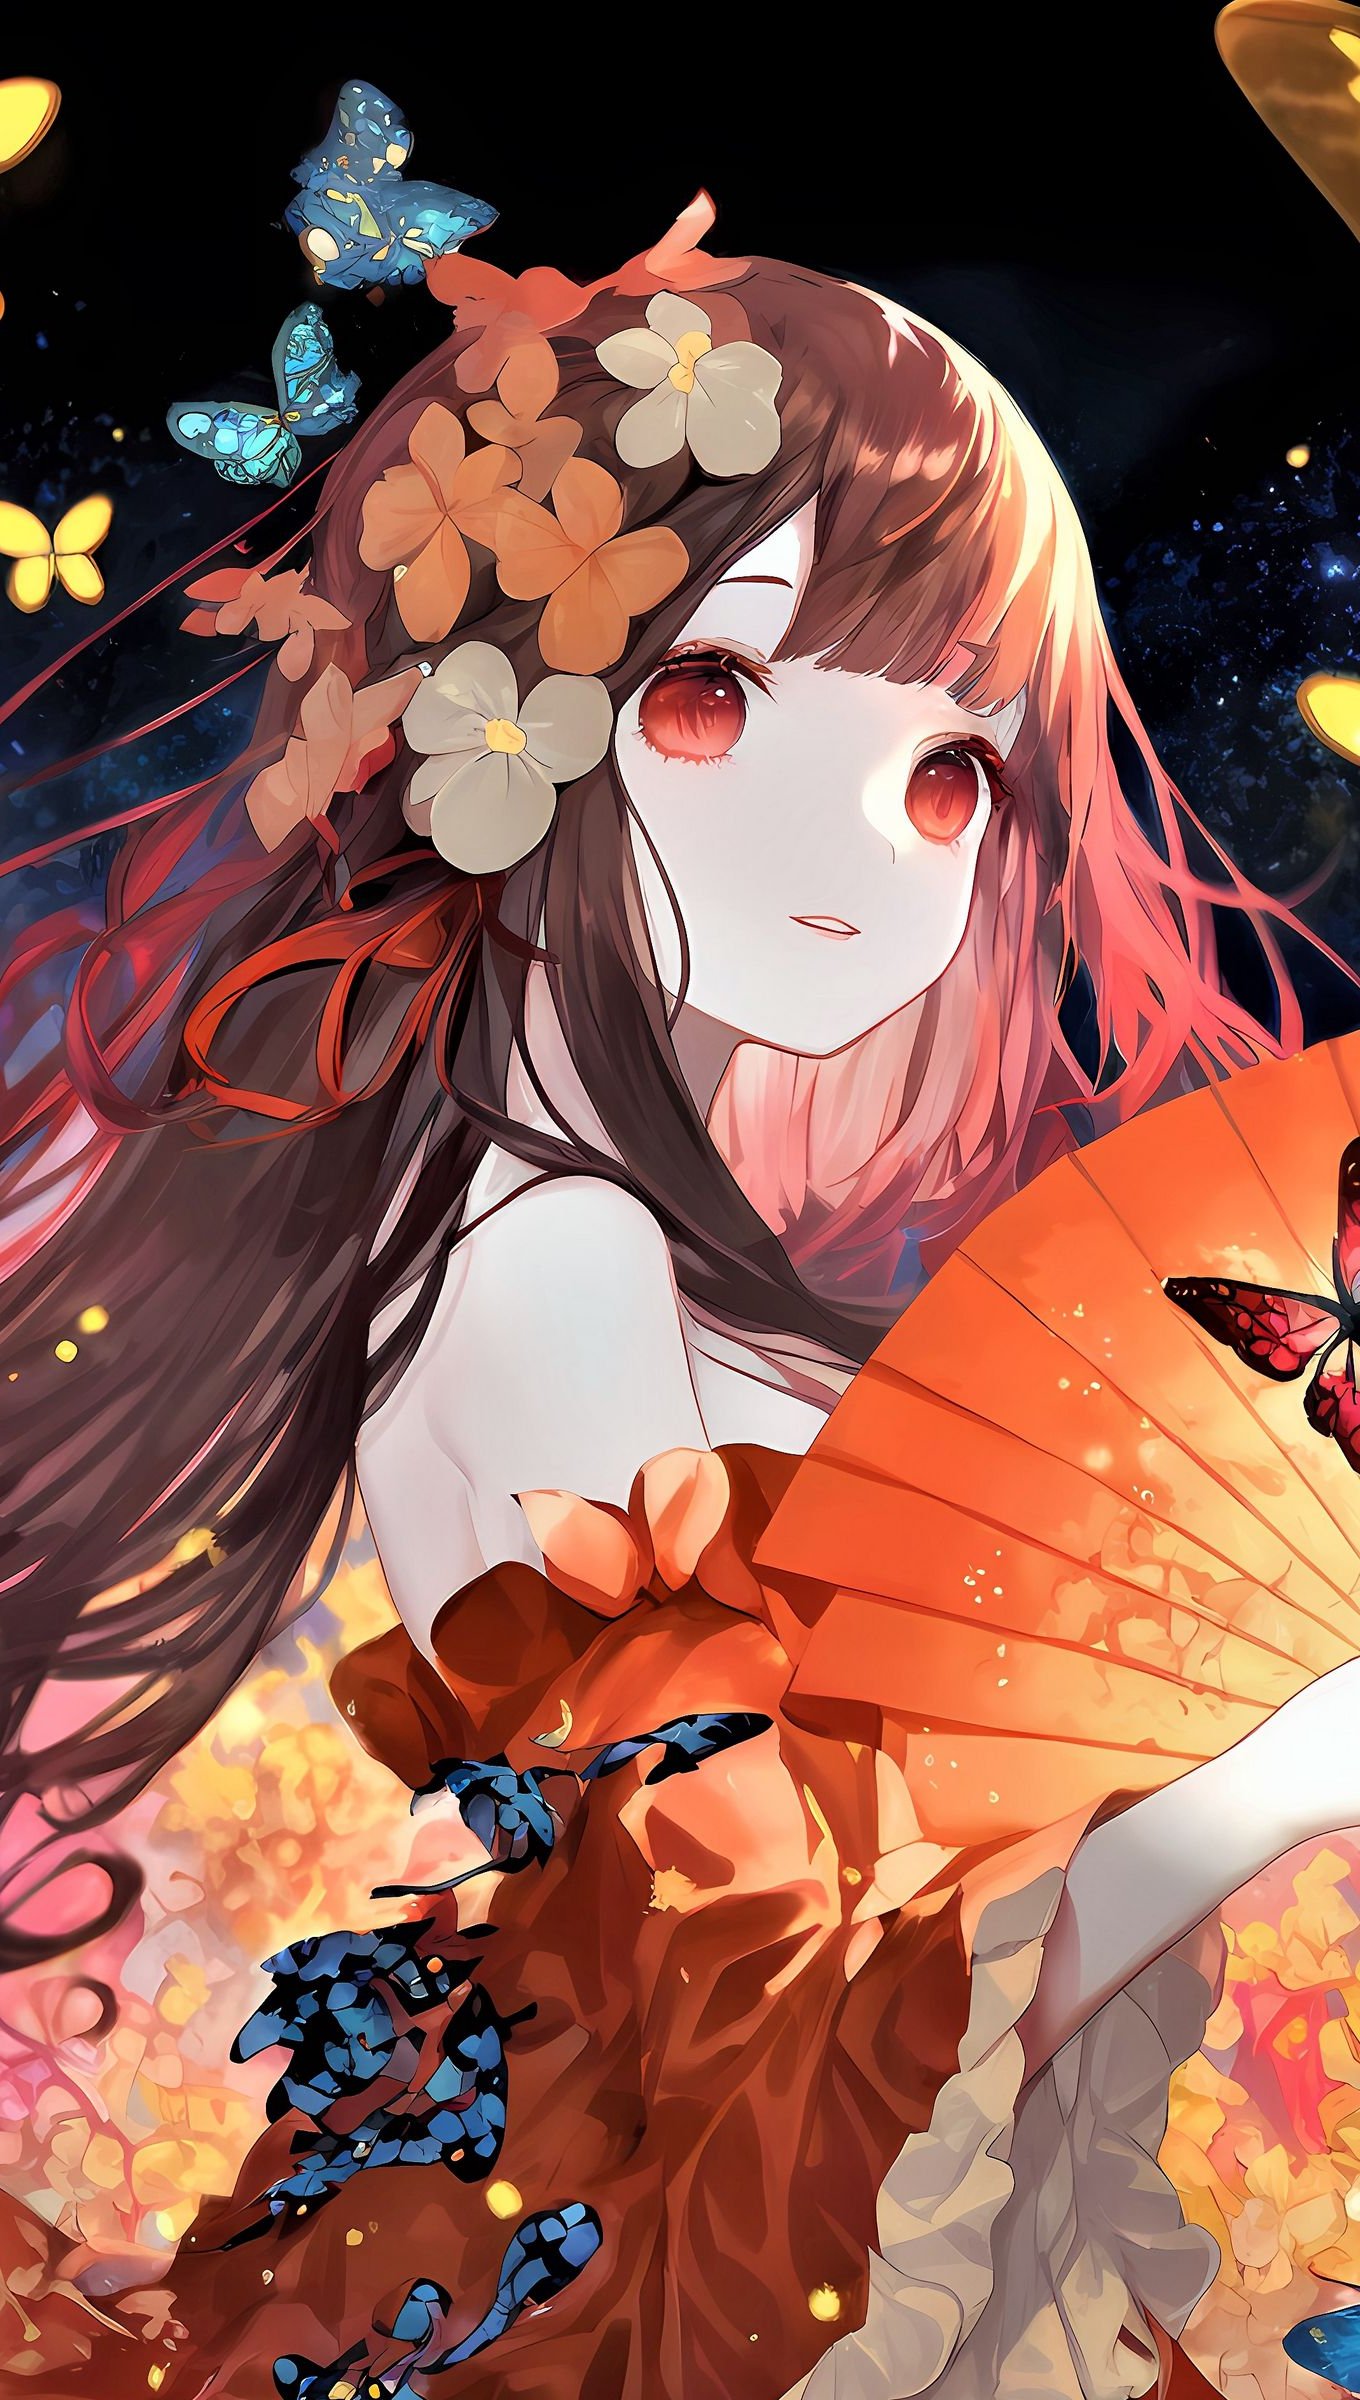 Wallpaper Anime girl with butterflies Vertical